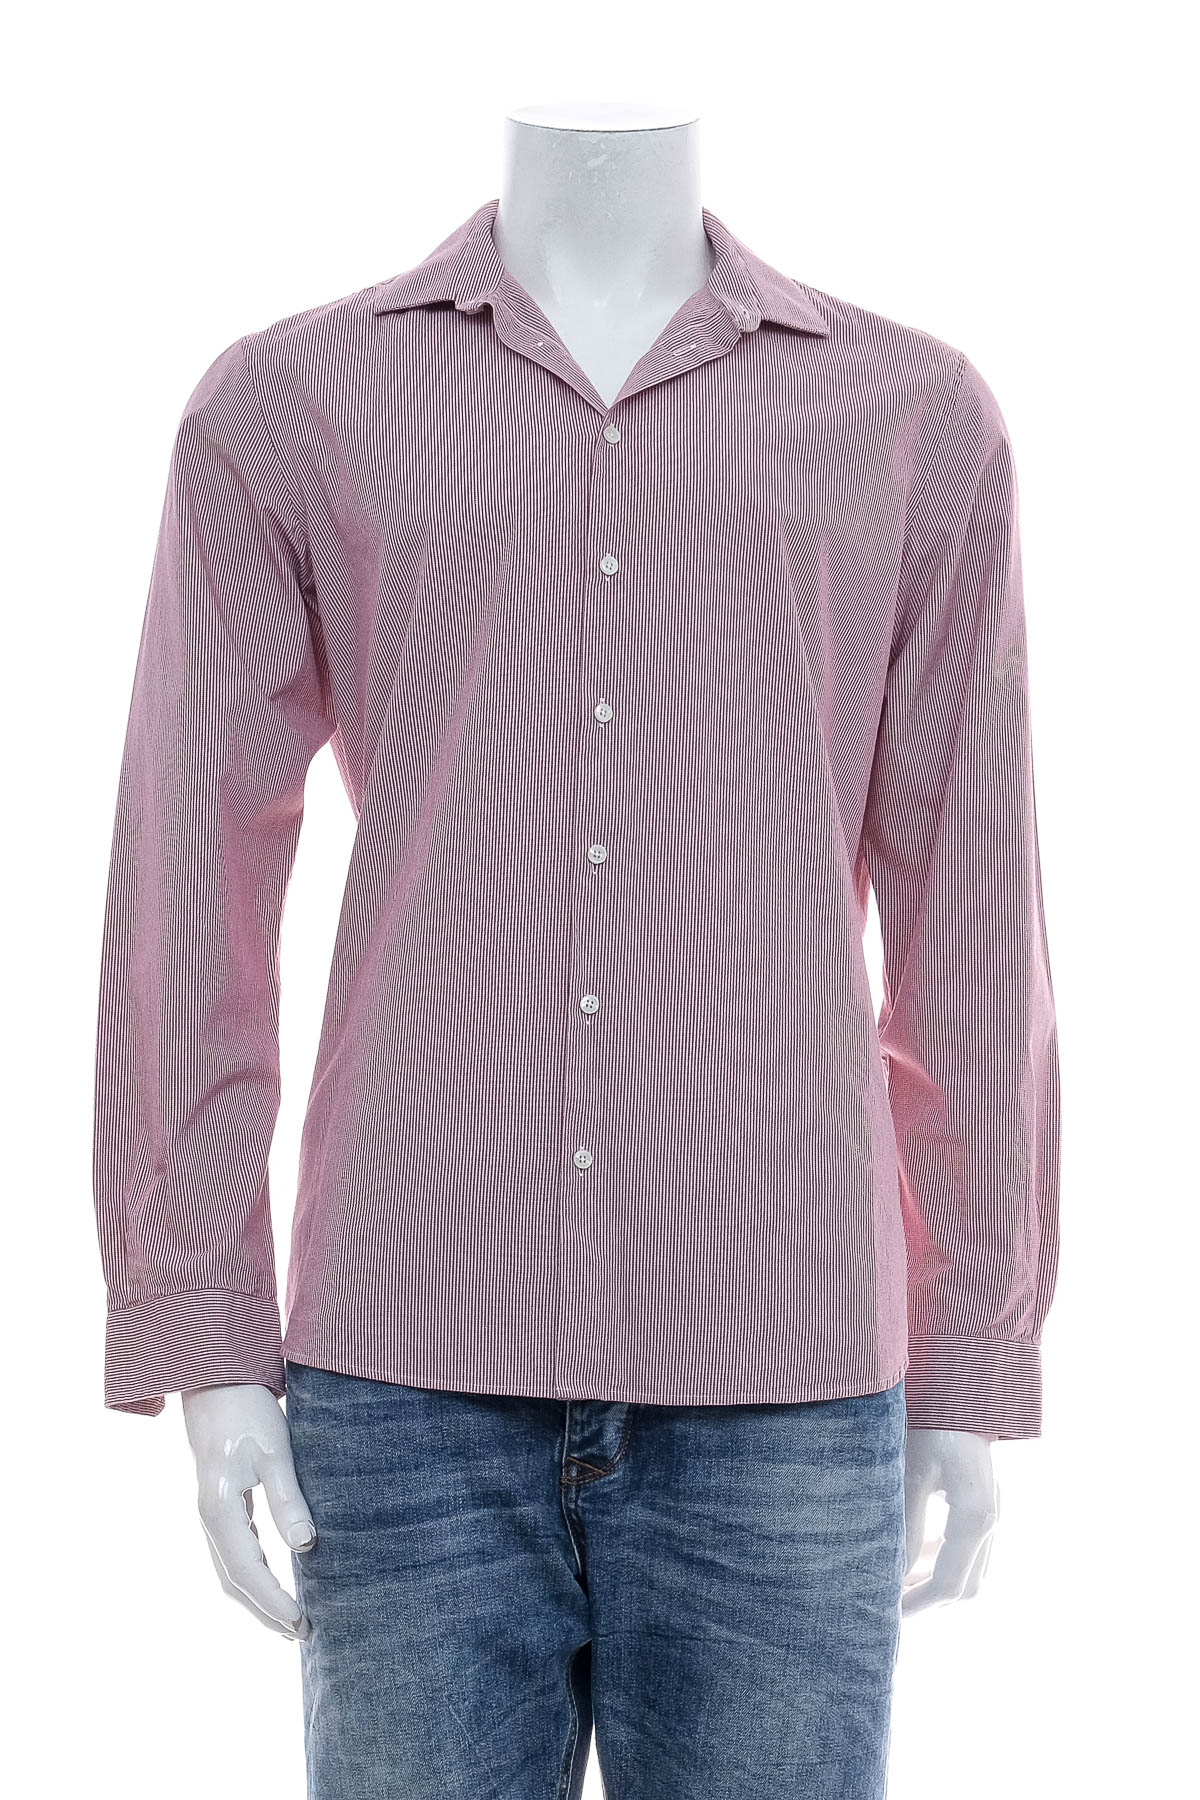 Ανδρικό πουκάμισο - Angelo Litrico - 0